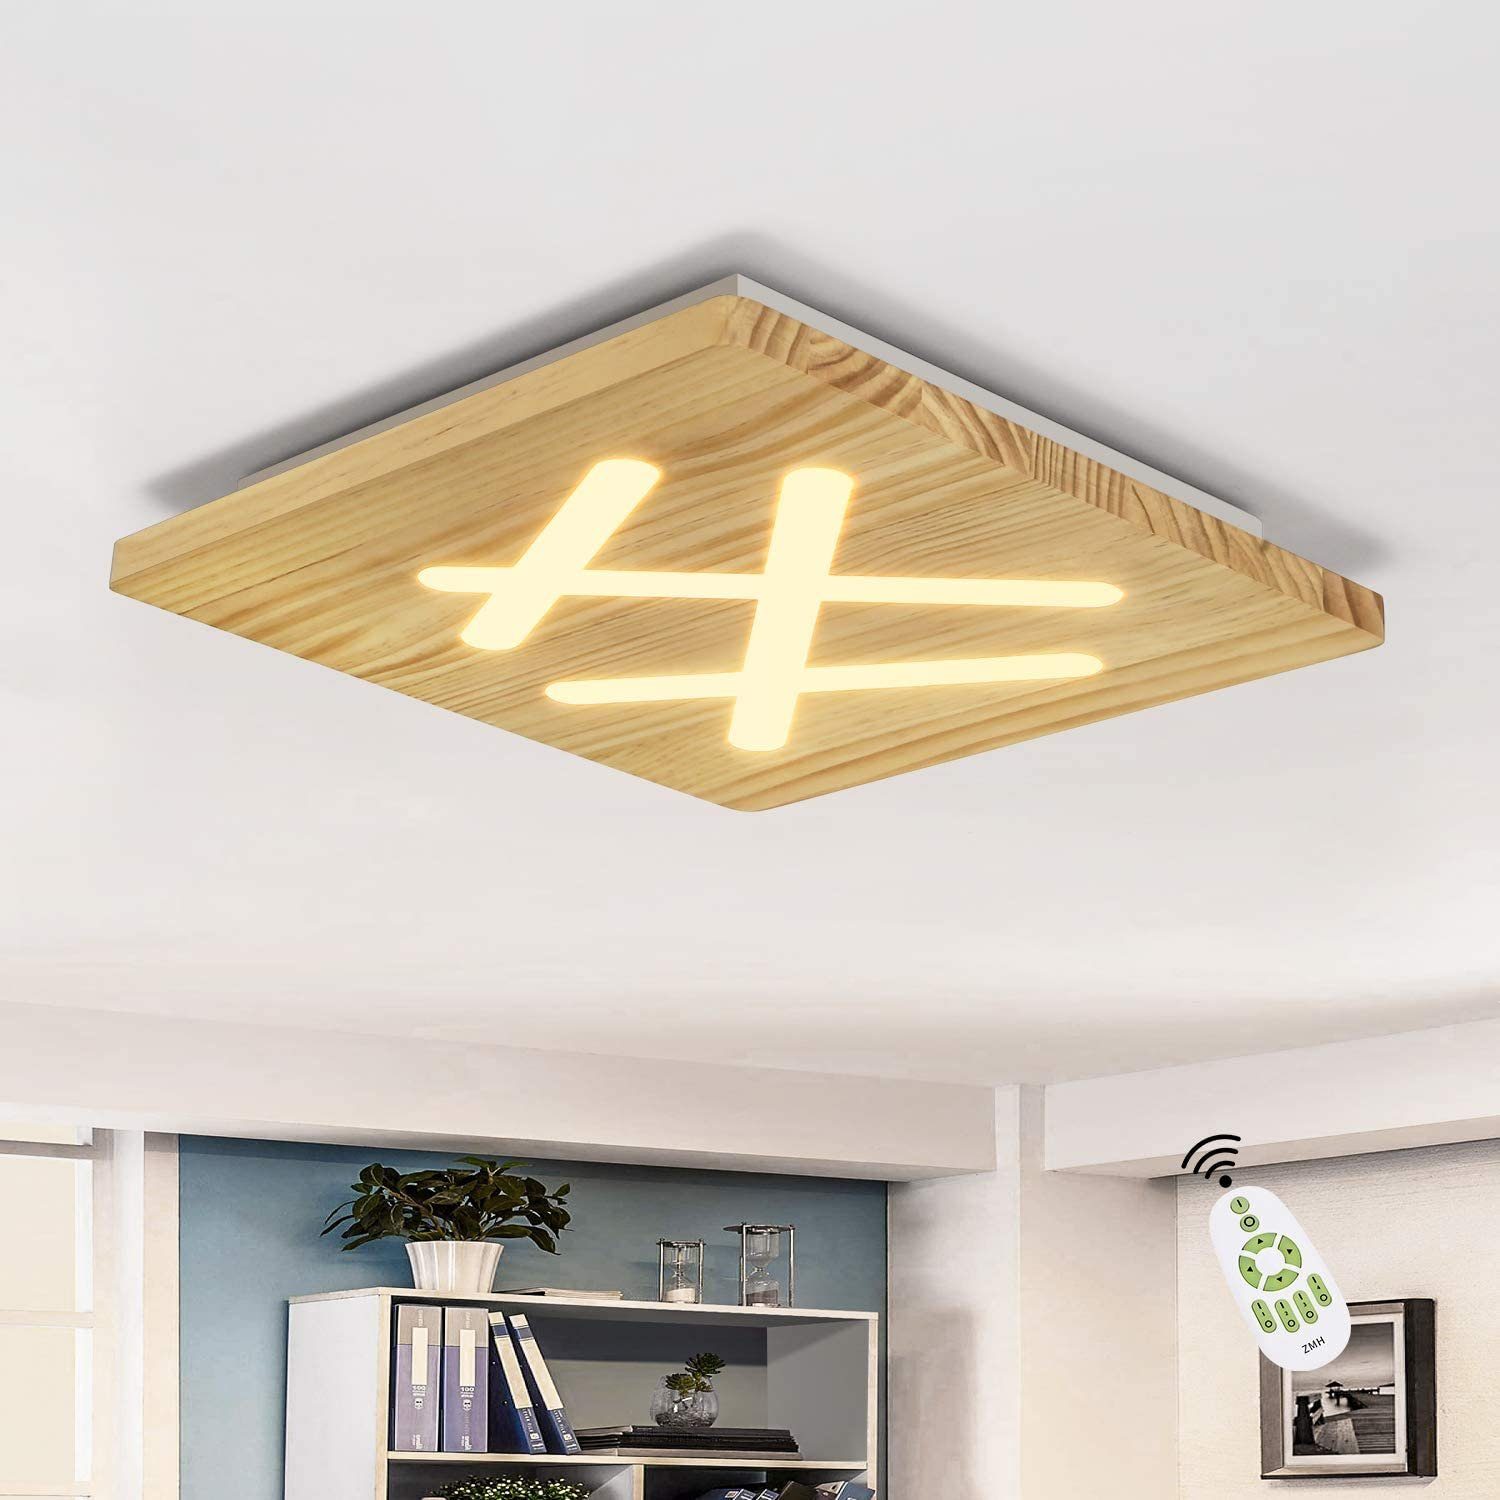 Holz LED Decken Lampen Flur Leuchten Ess Wohn Schlaf Zimmer Beleuchtung modern 